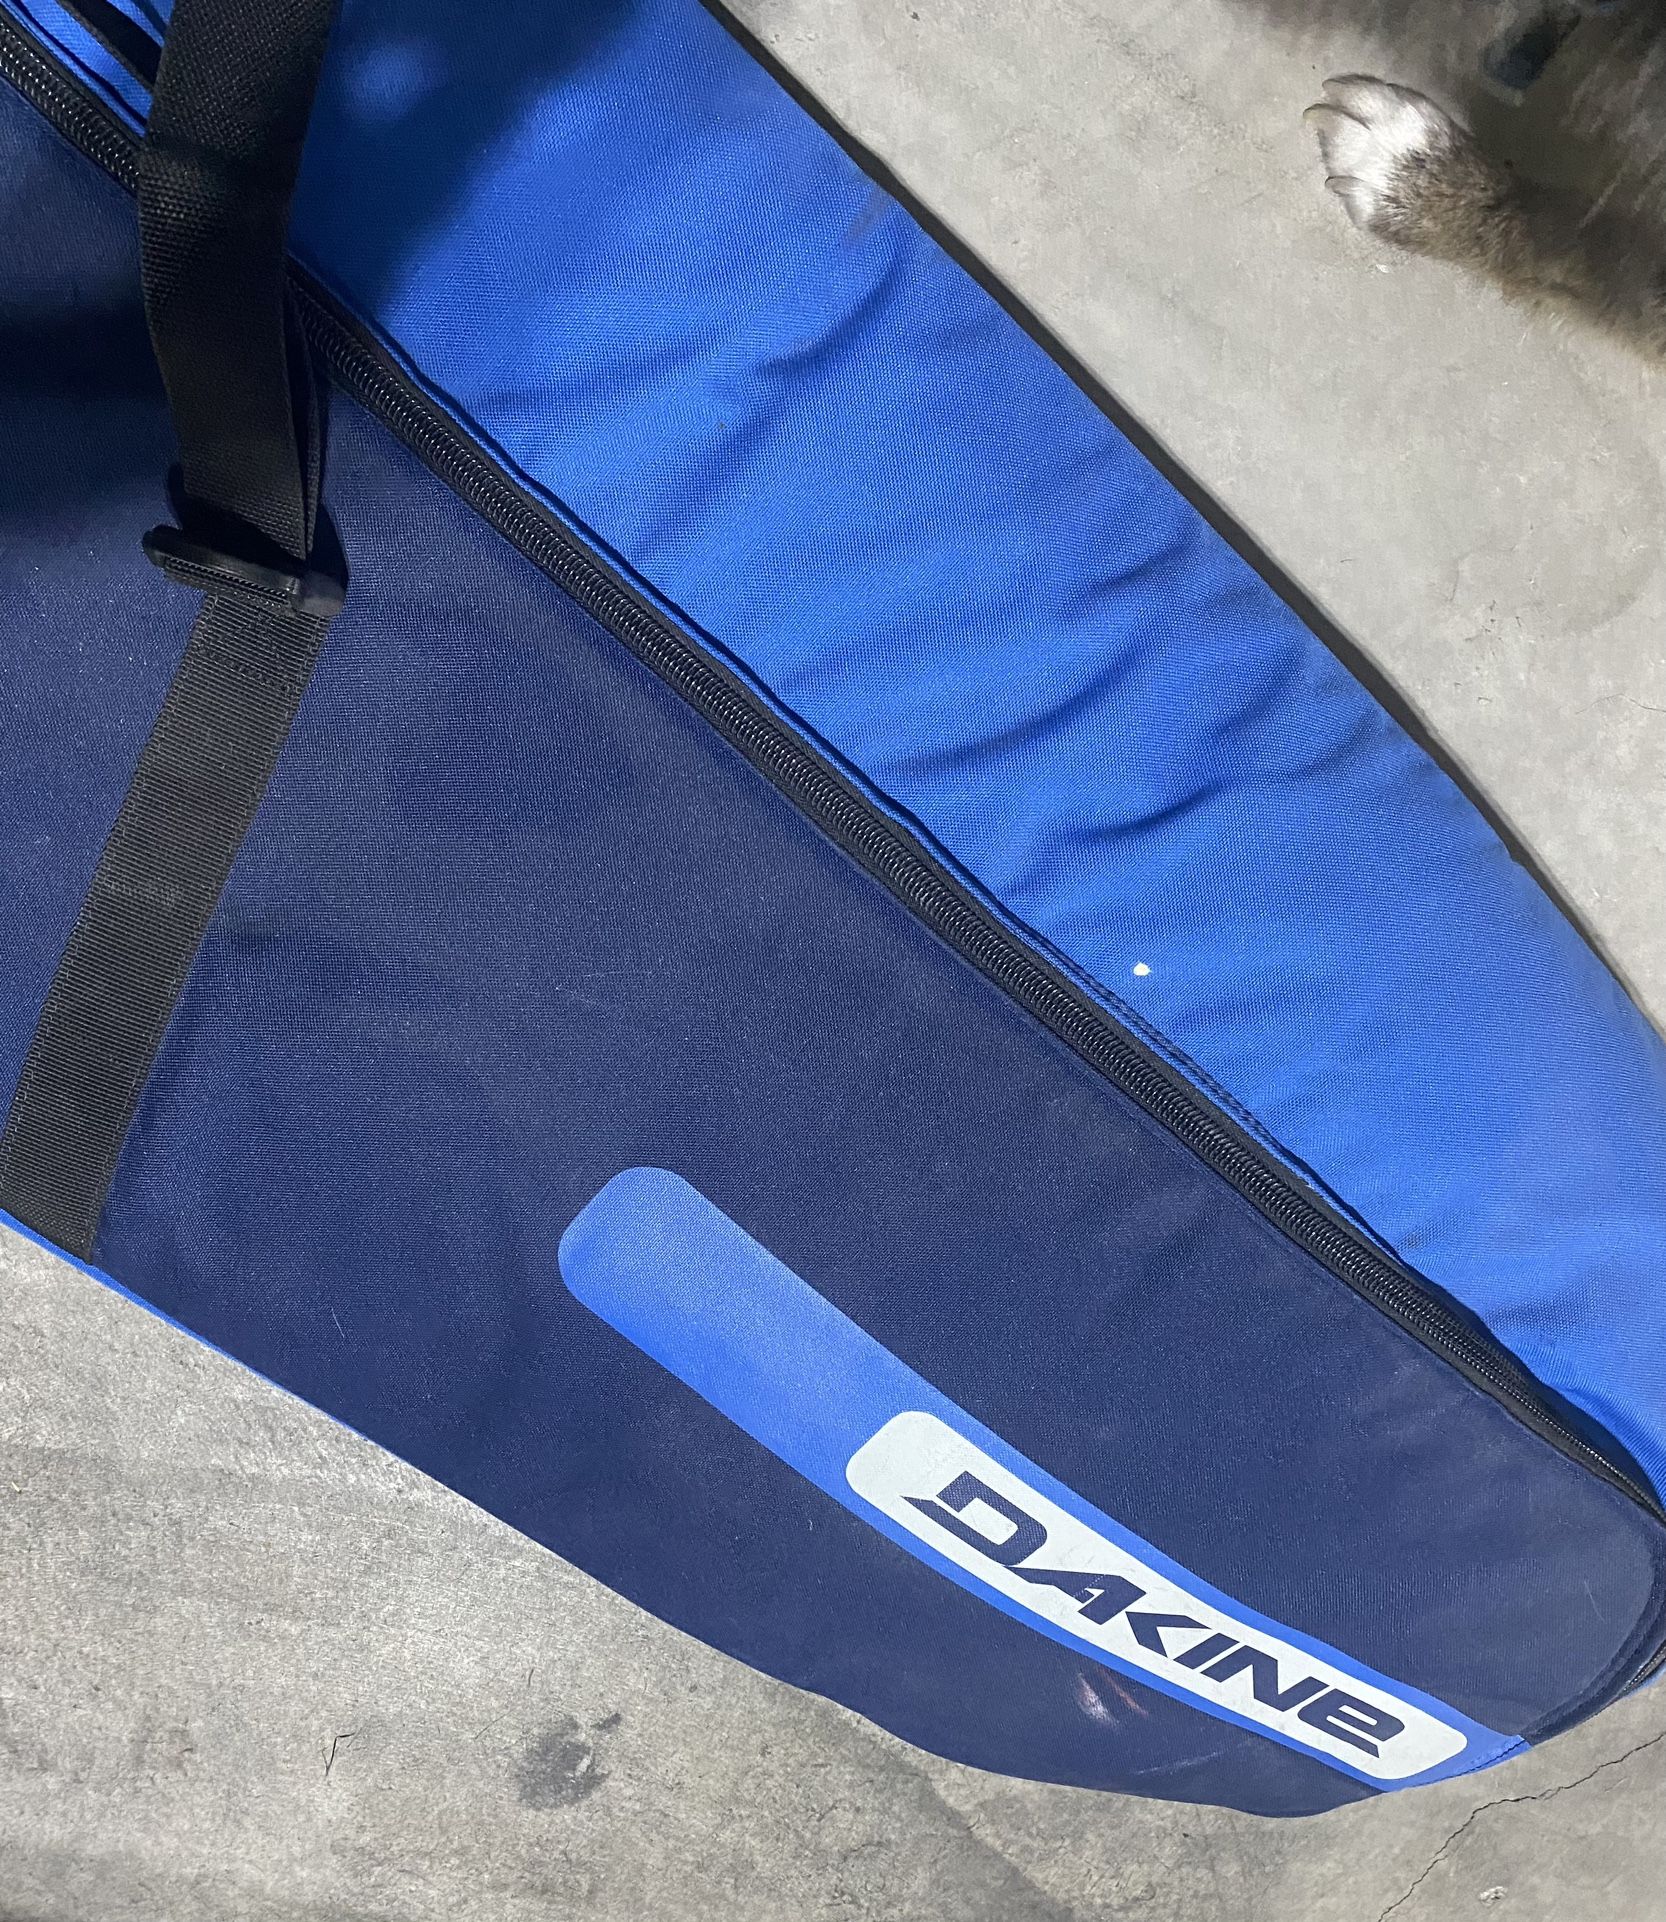 Snowboard Bag, Dakine 